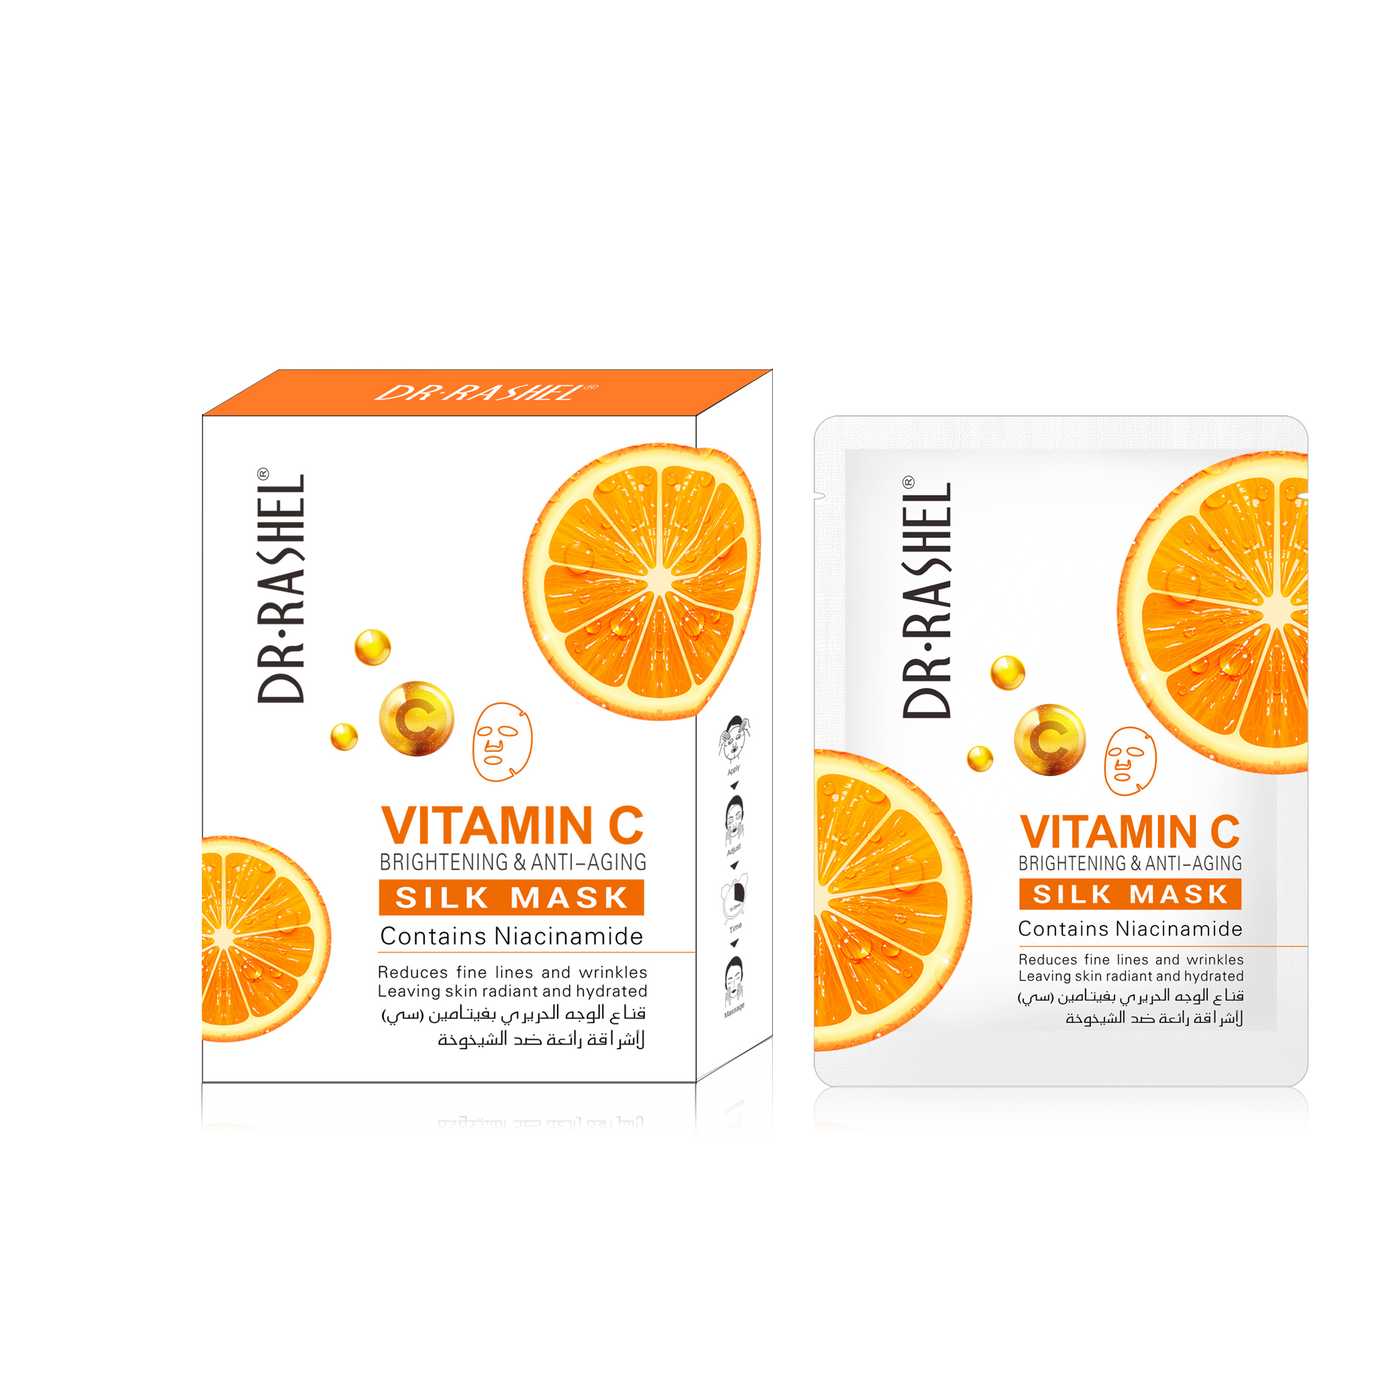 Vitamin c brightening & anti-aging silk mask